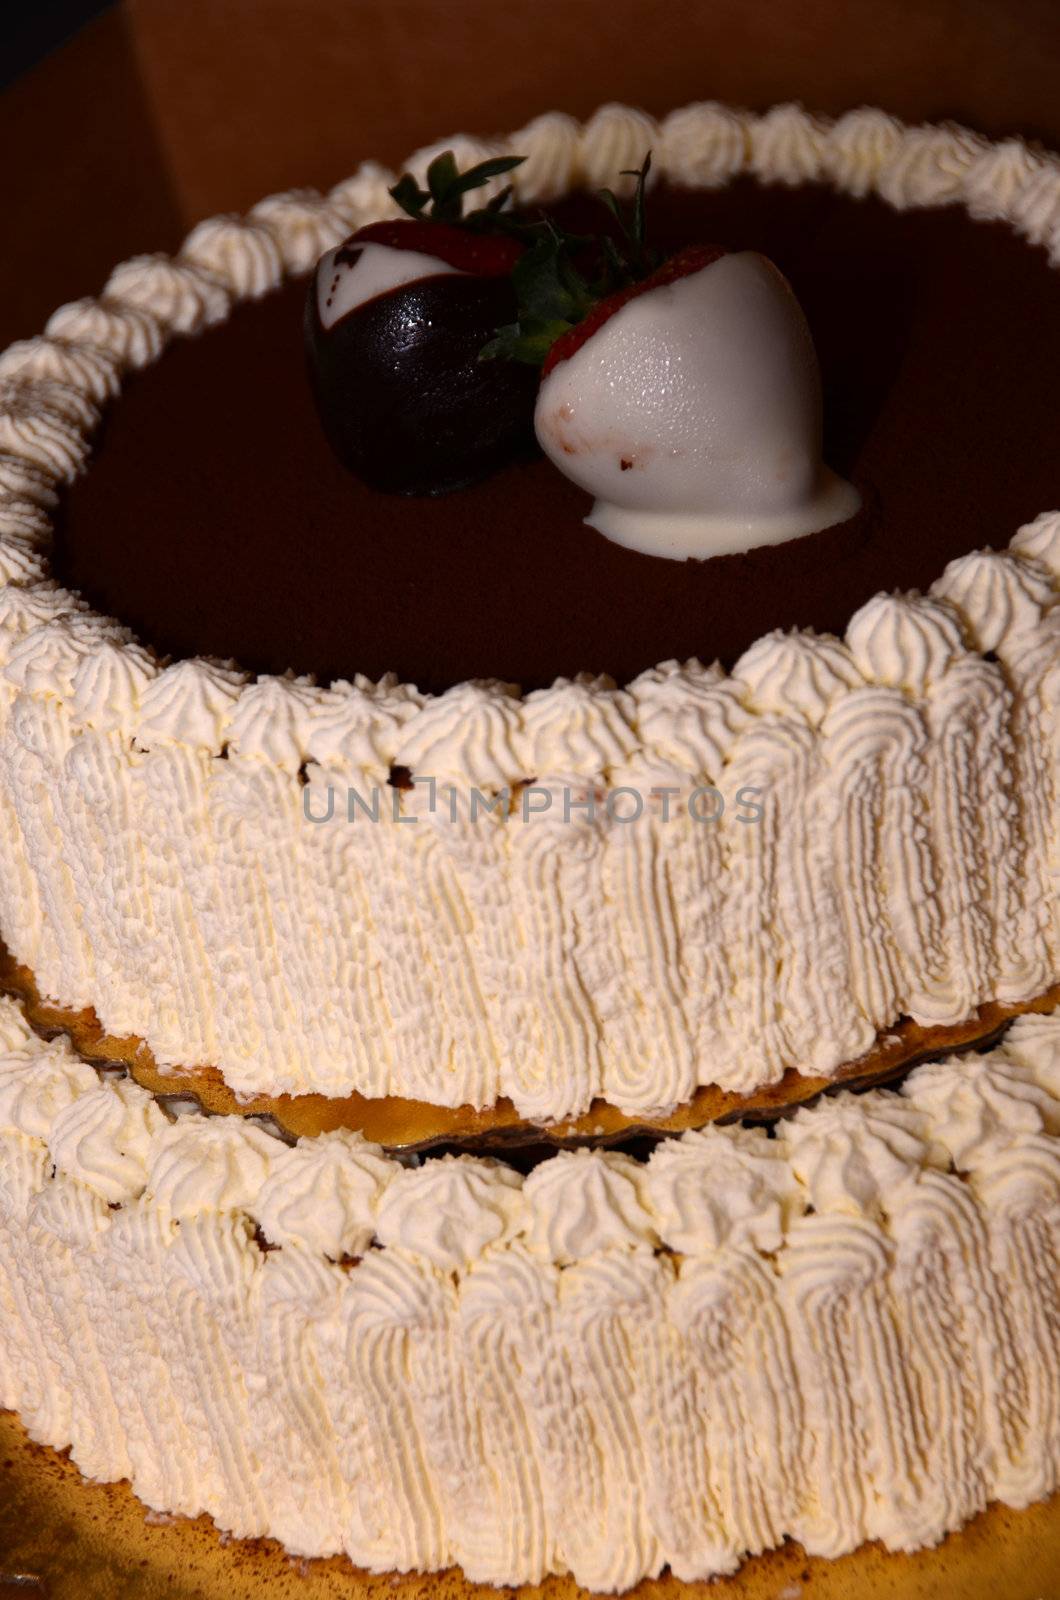 Chocalate cake by seattlephoto